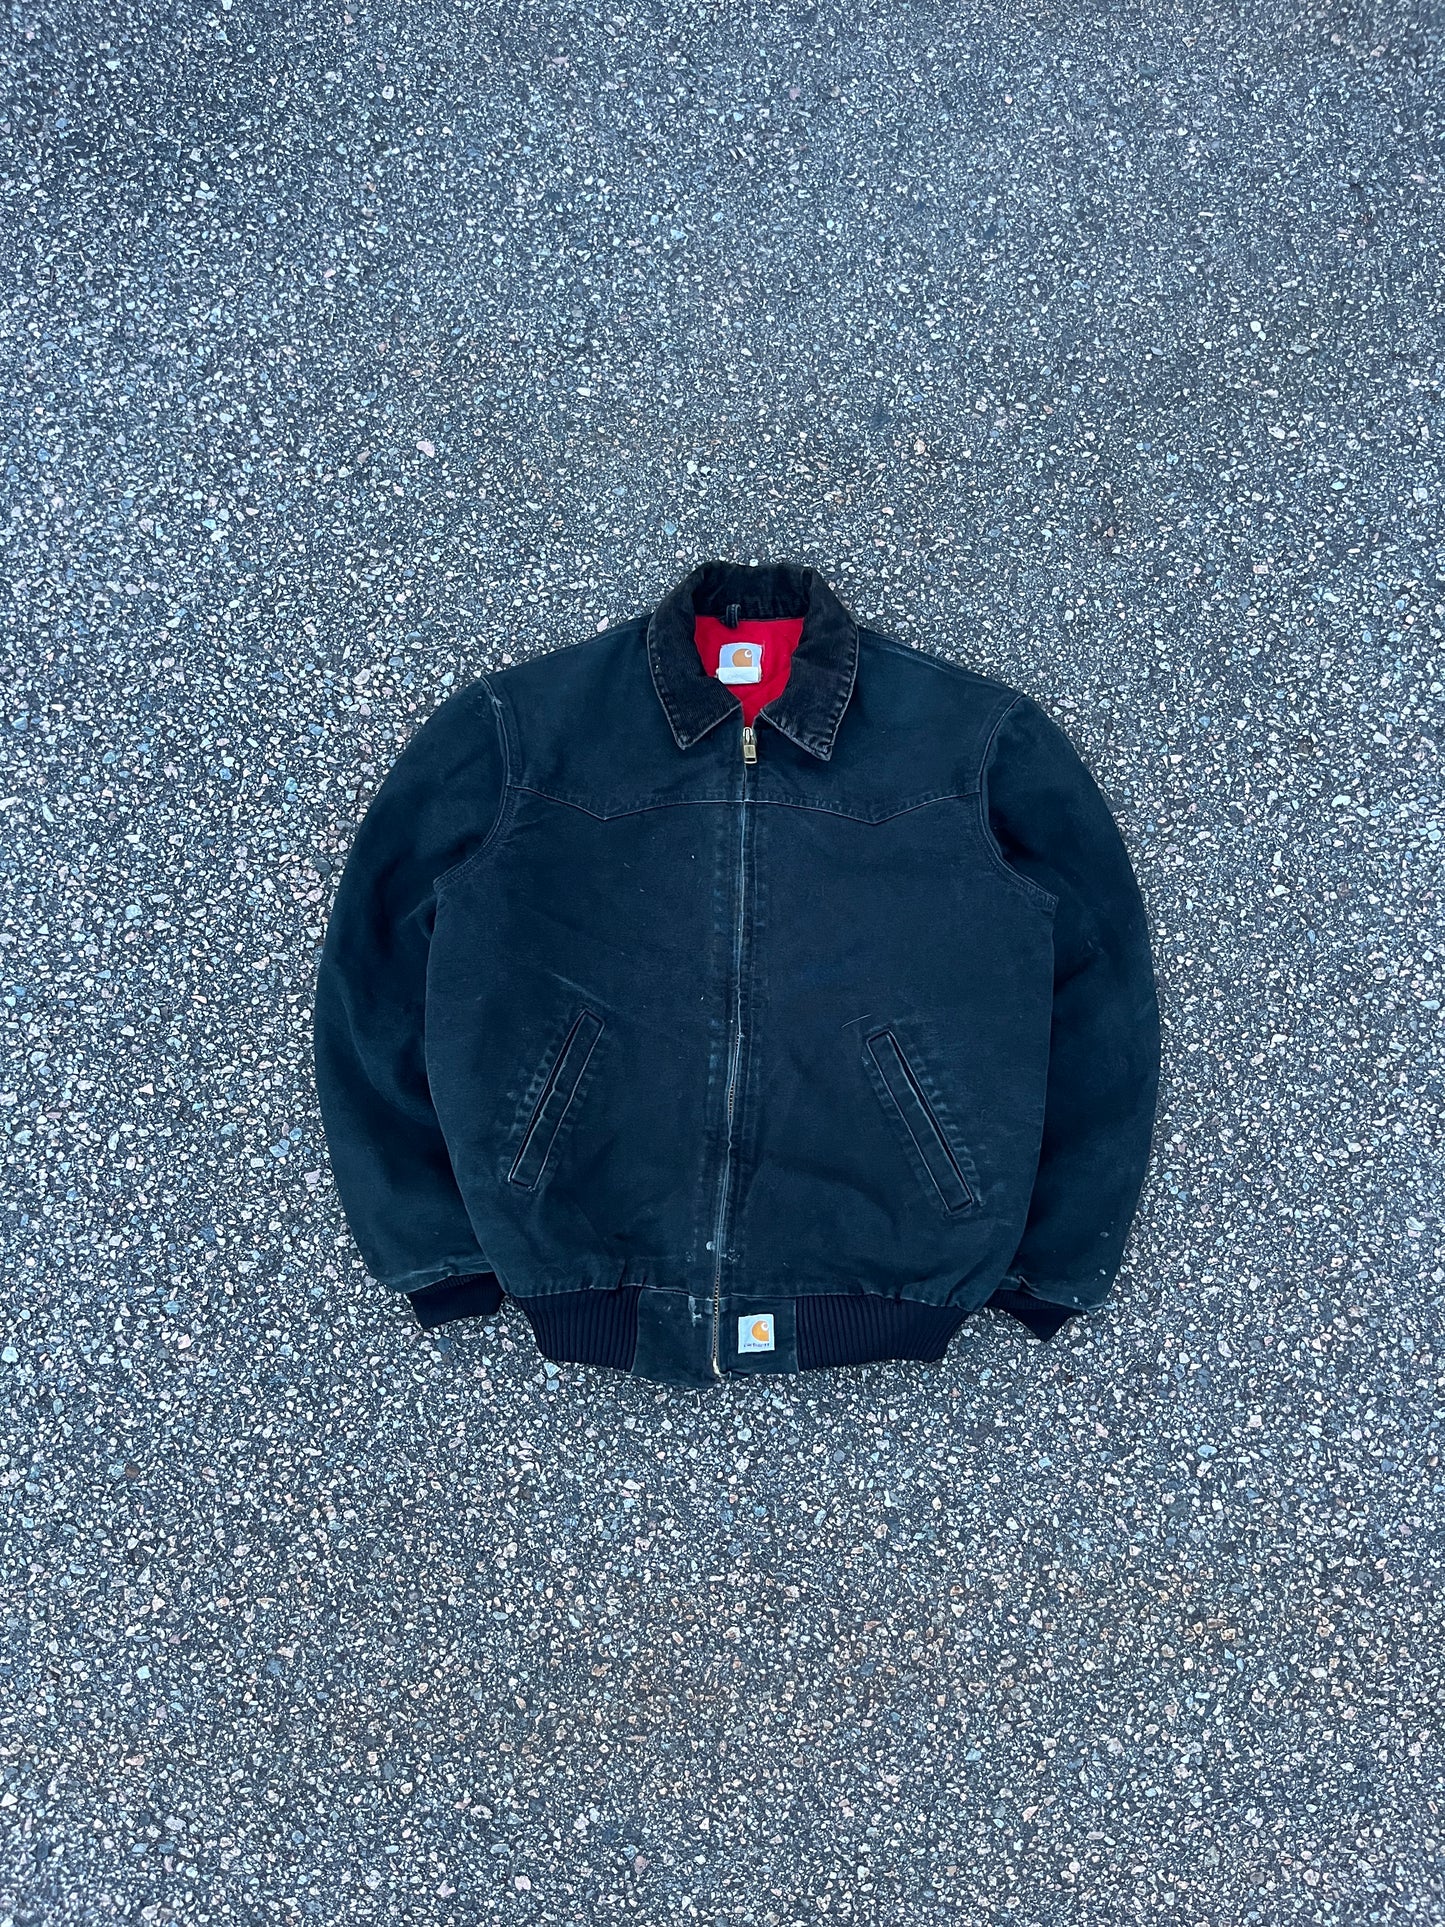 Faded Black Carhartt Santa Fe Jacket - Medium